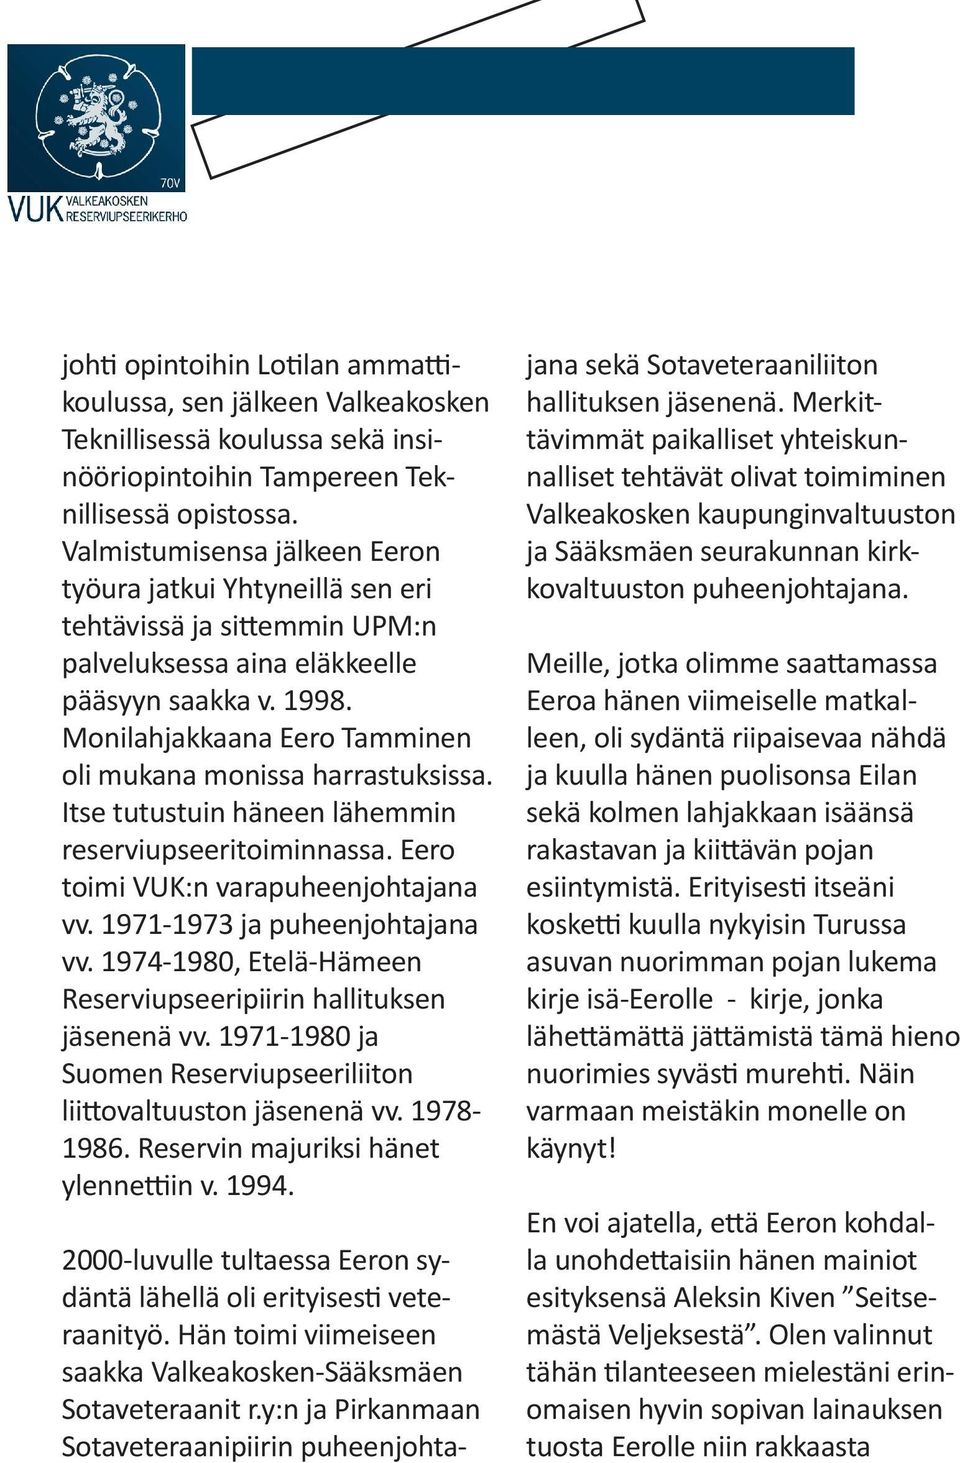 Monilahjakkaana Eero Tamminen oli mukana monissa harrastuksissa. Itse tutustuin häneen lähemmin reserviupseeritoiminnassa. Eero toimi VUK:n varapuheenjohtajana vv. 1971-1973 ja puheenjohtajana vv.